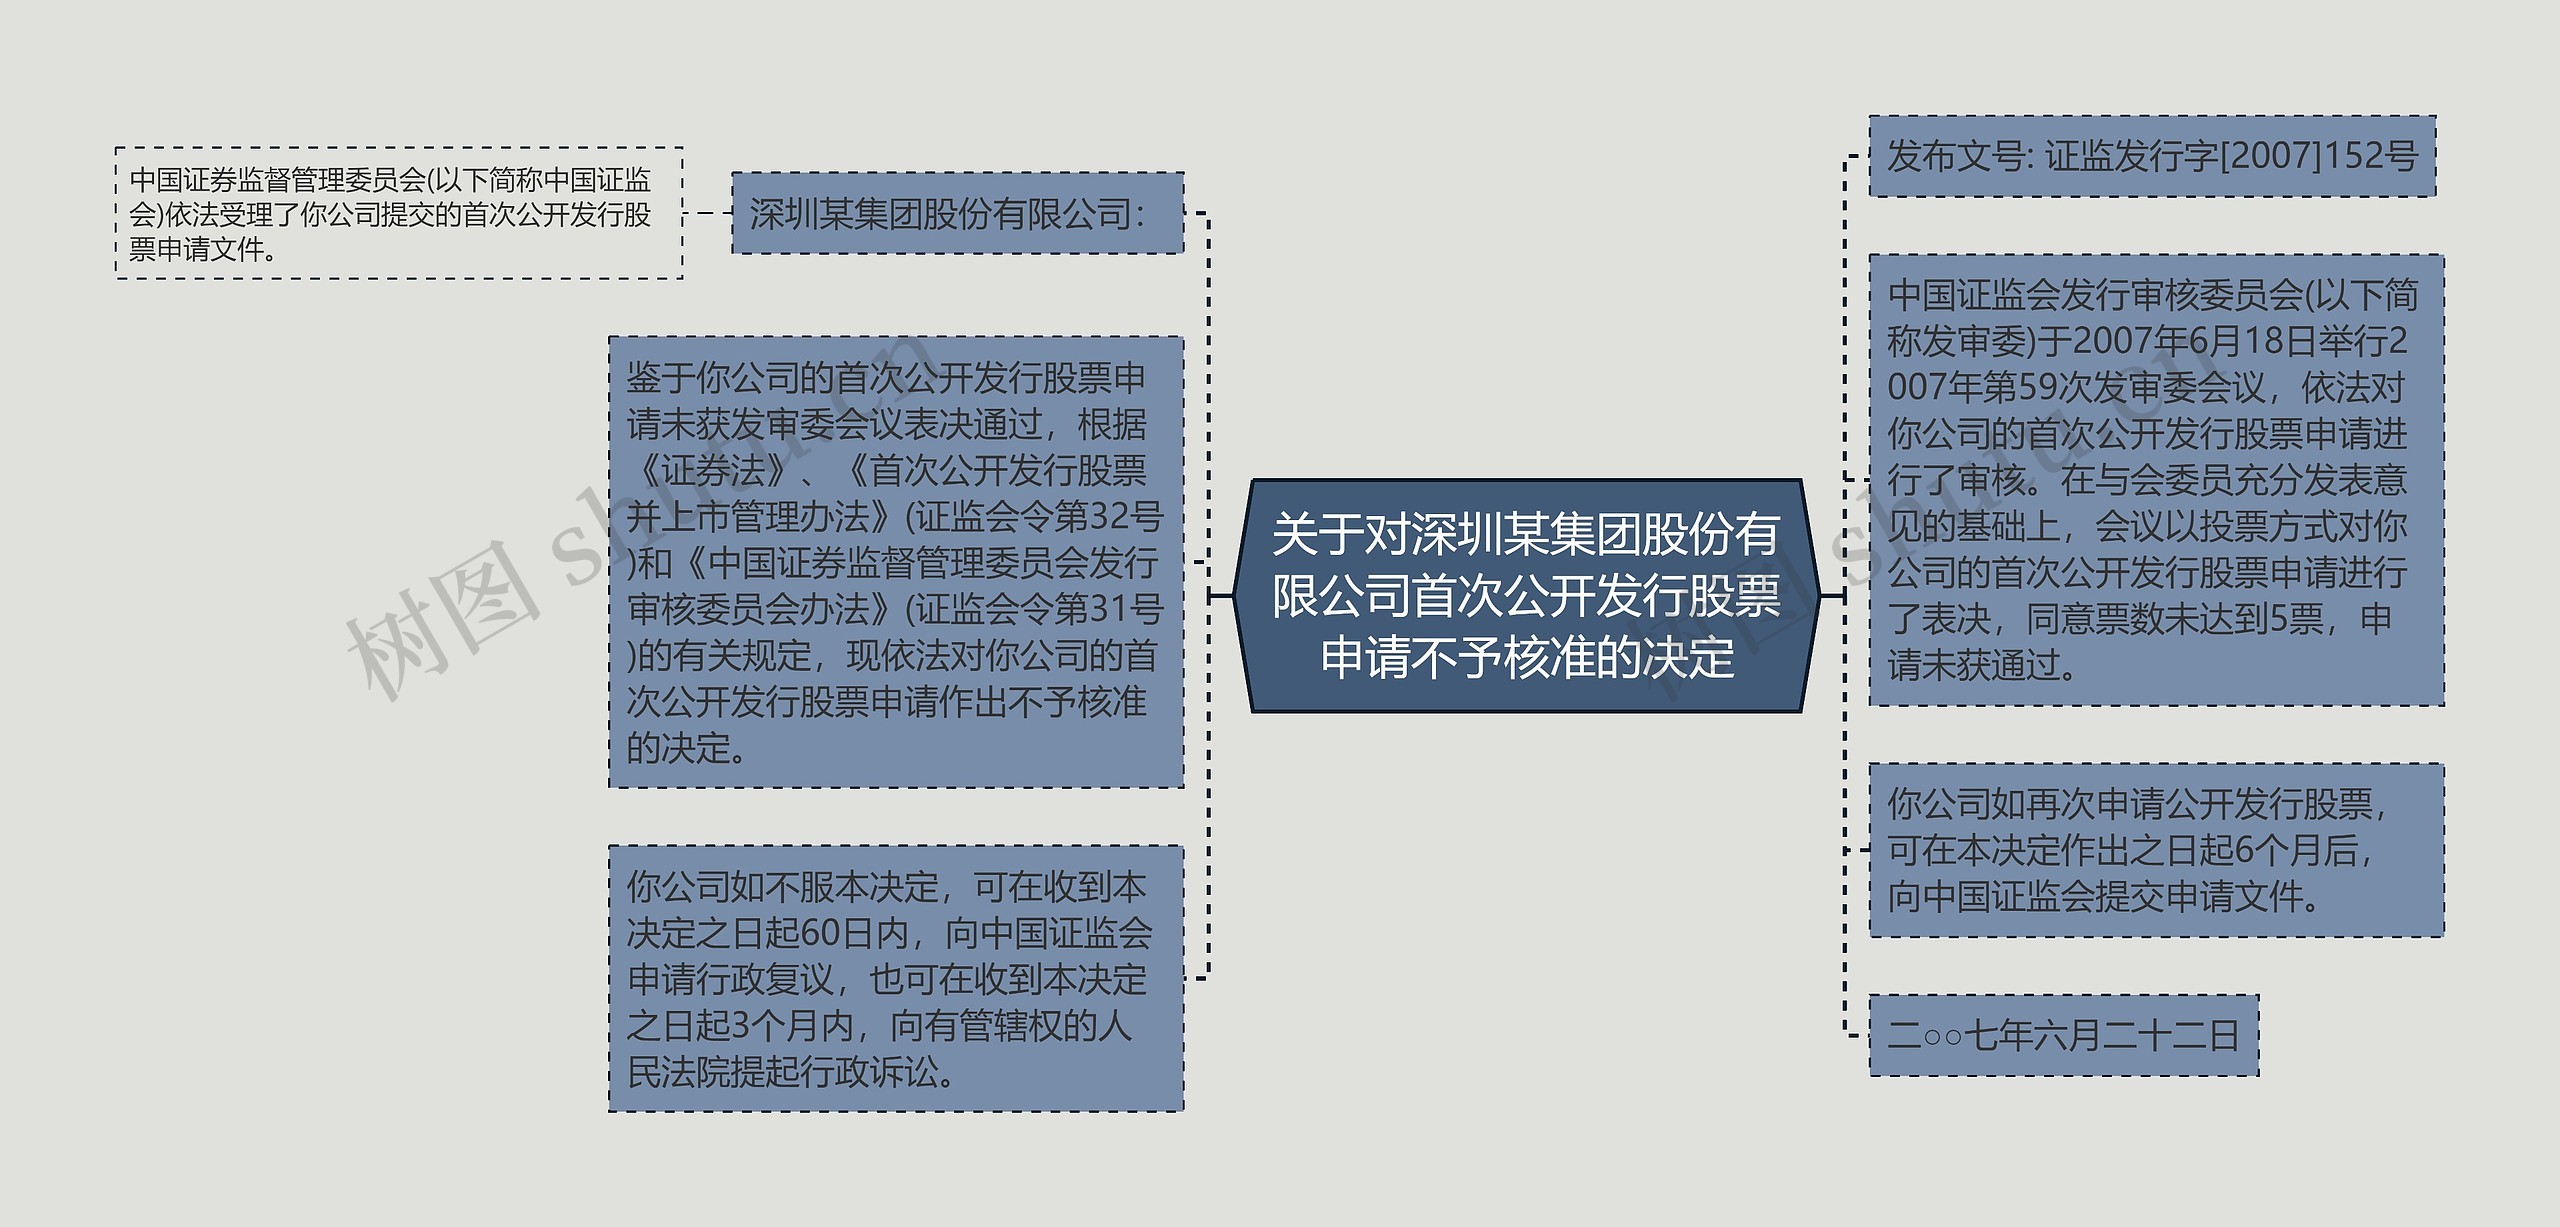 关于对深圳某集团股份有限公司首次公开发行股票申请不予核准的决定